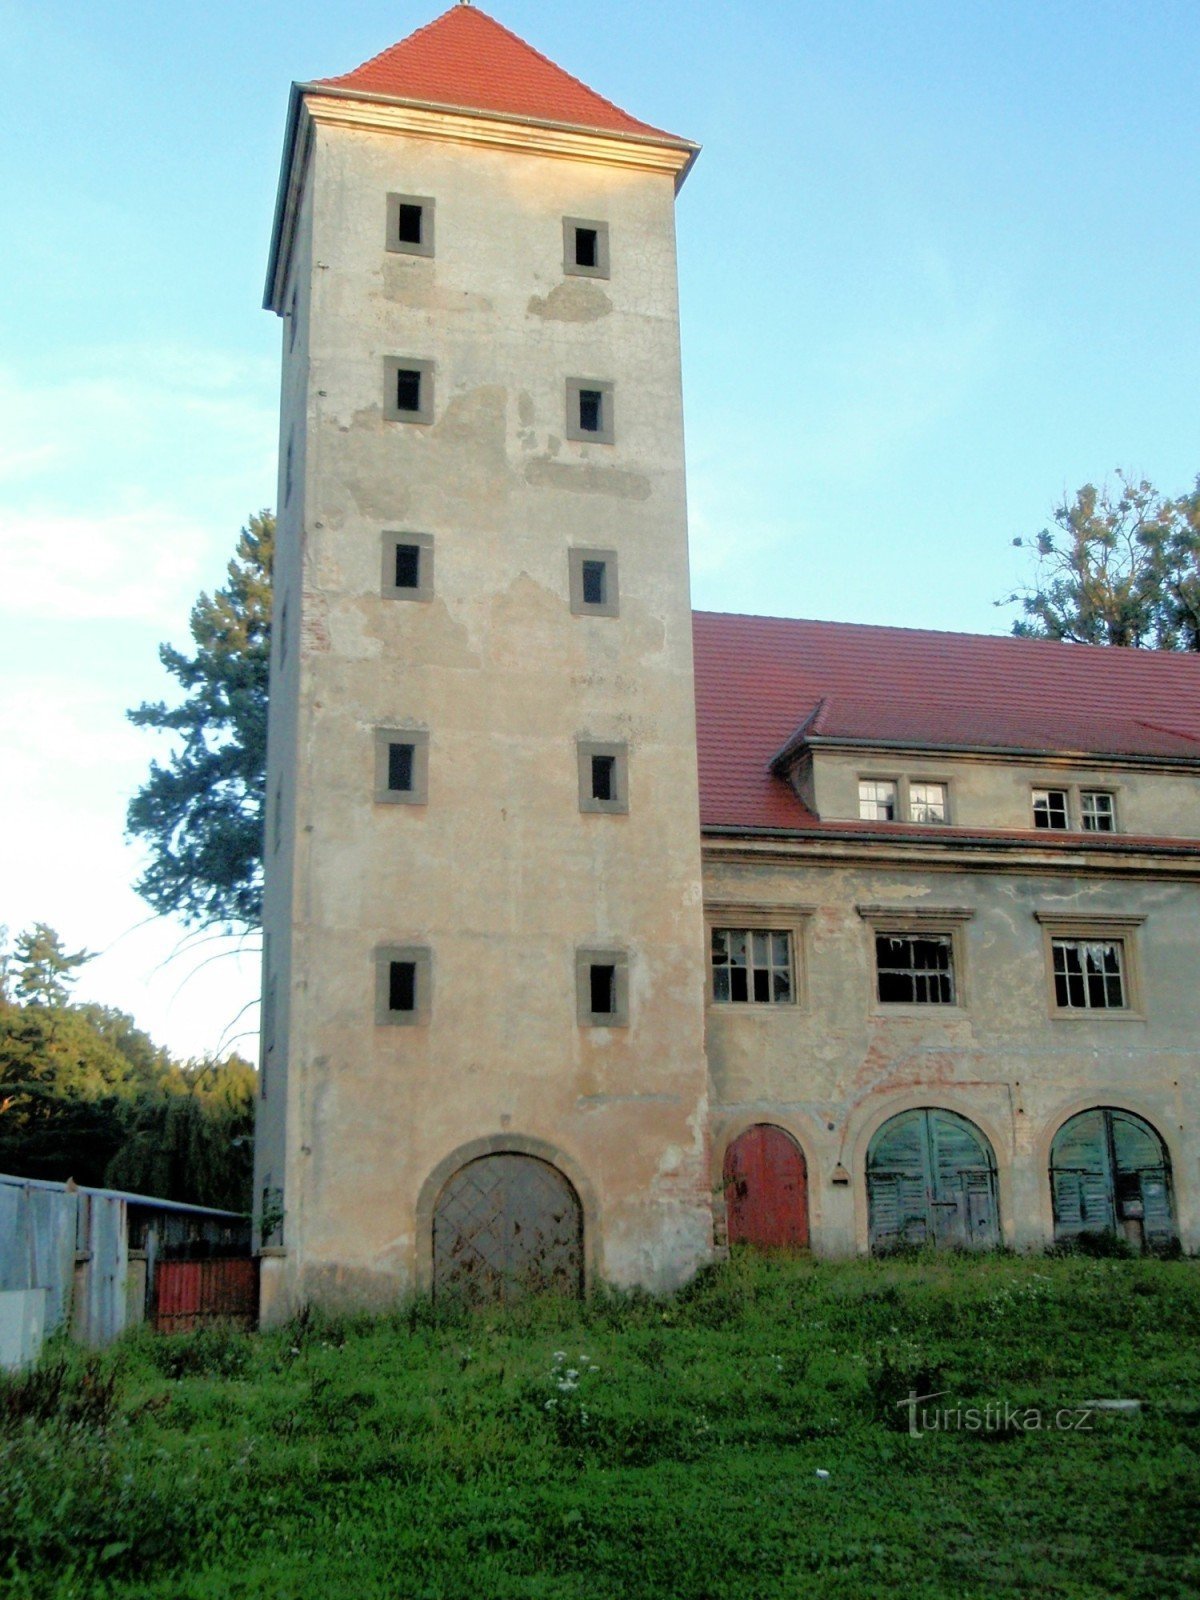 Tårn og almuehus med hospital